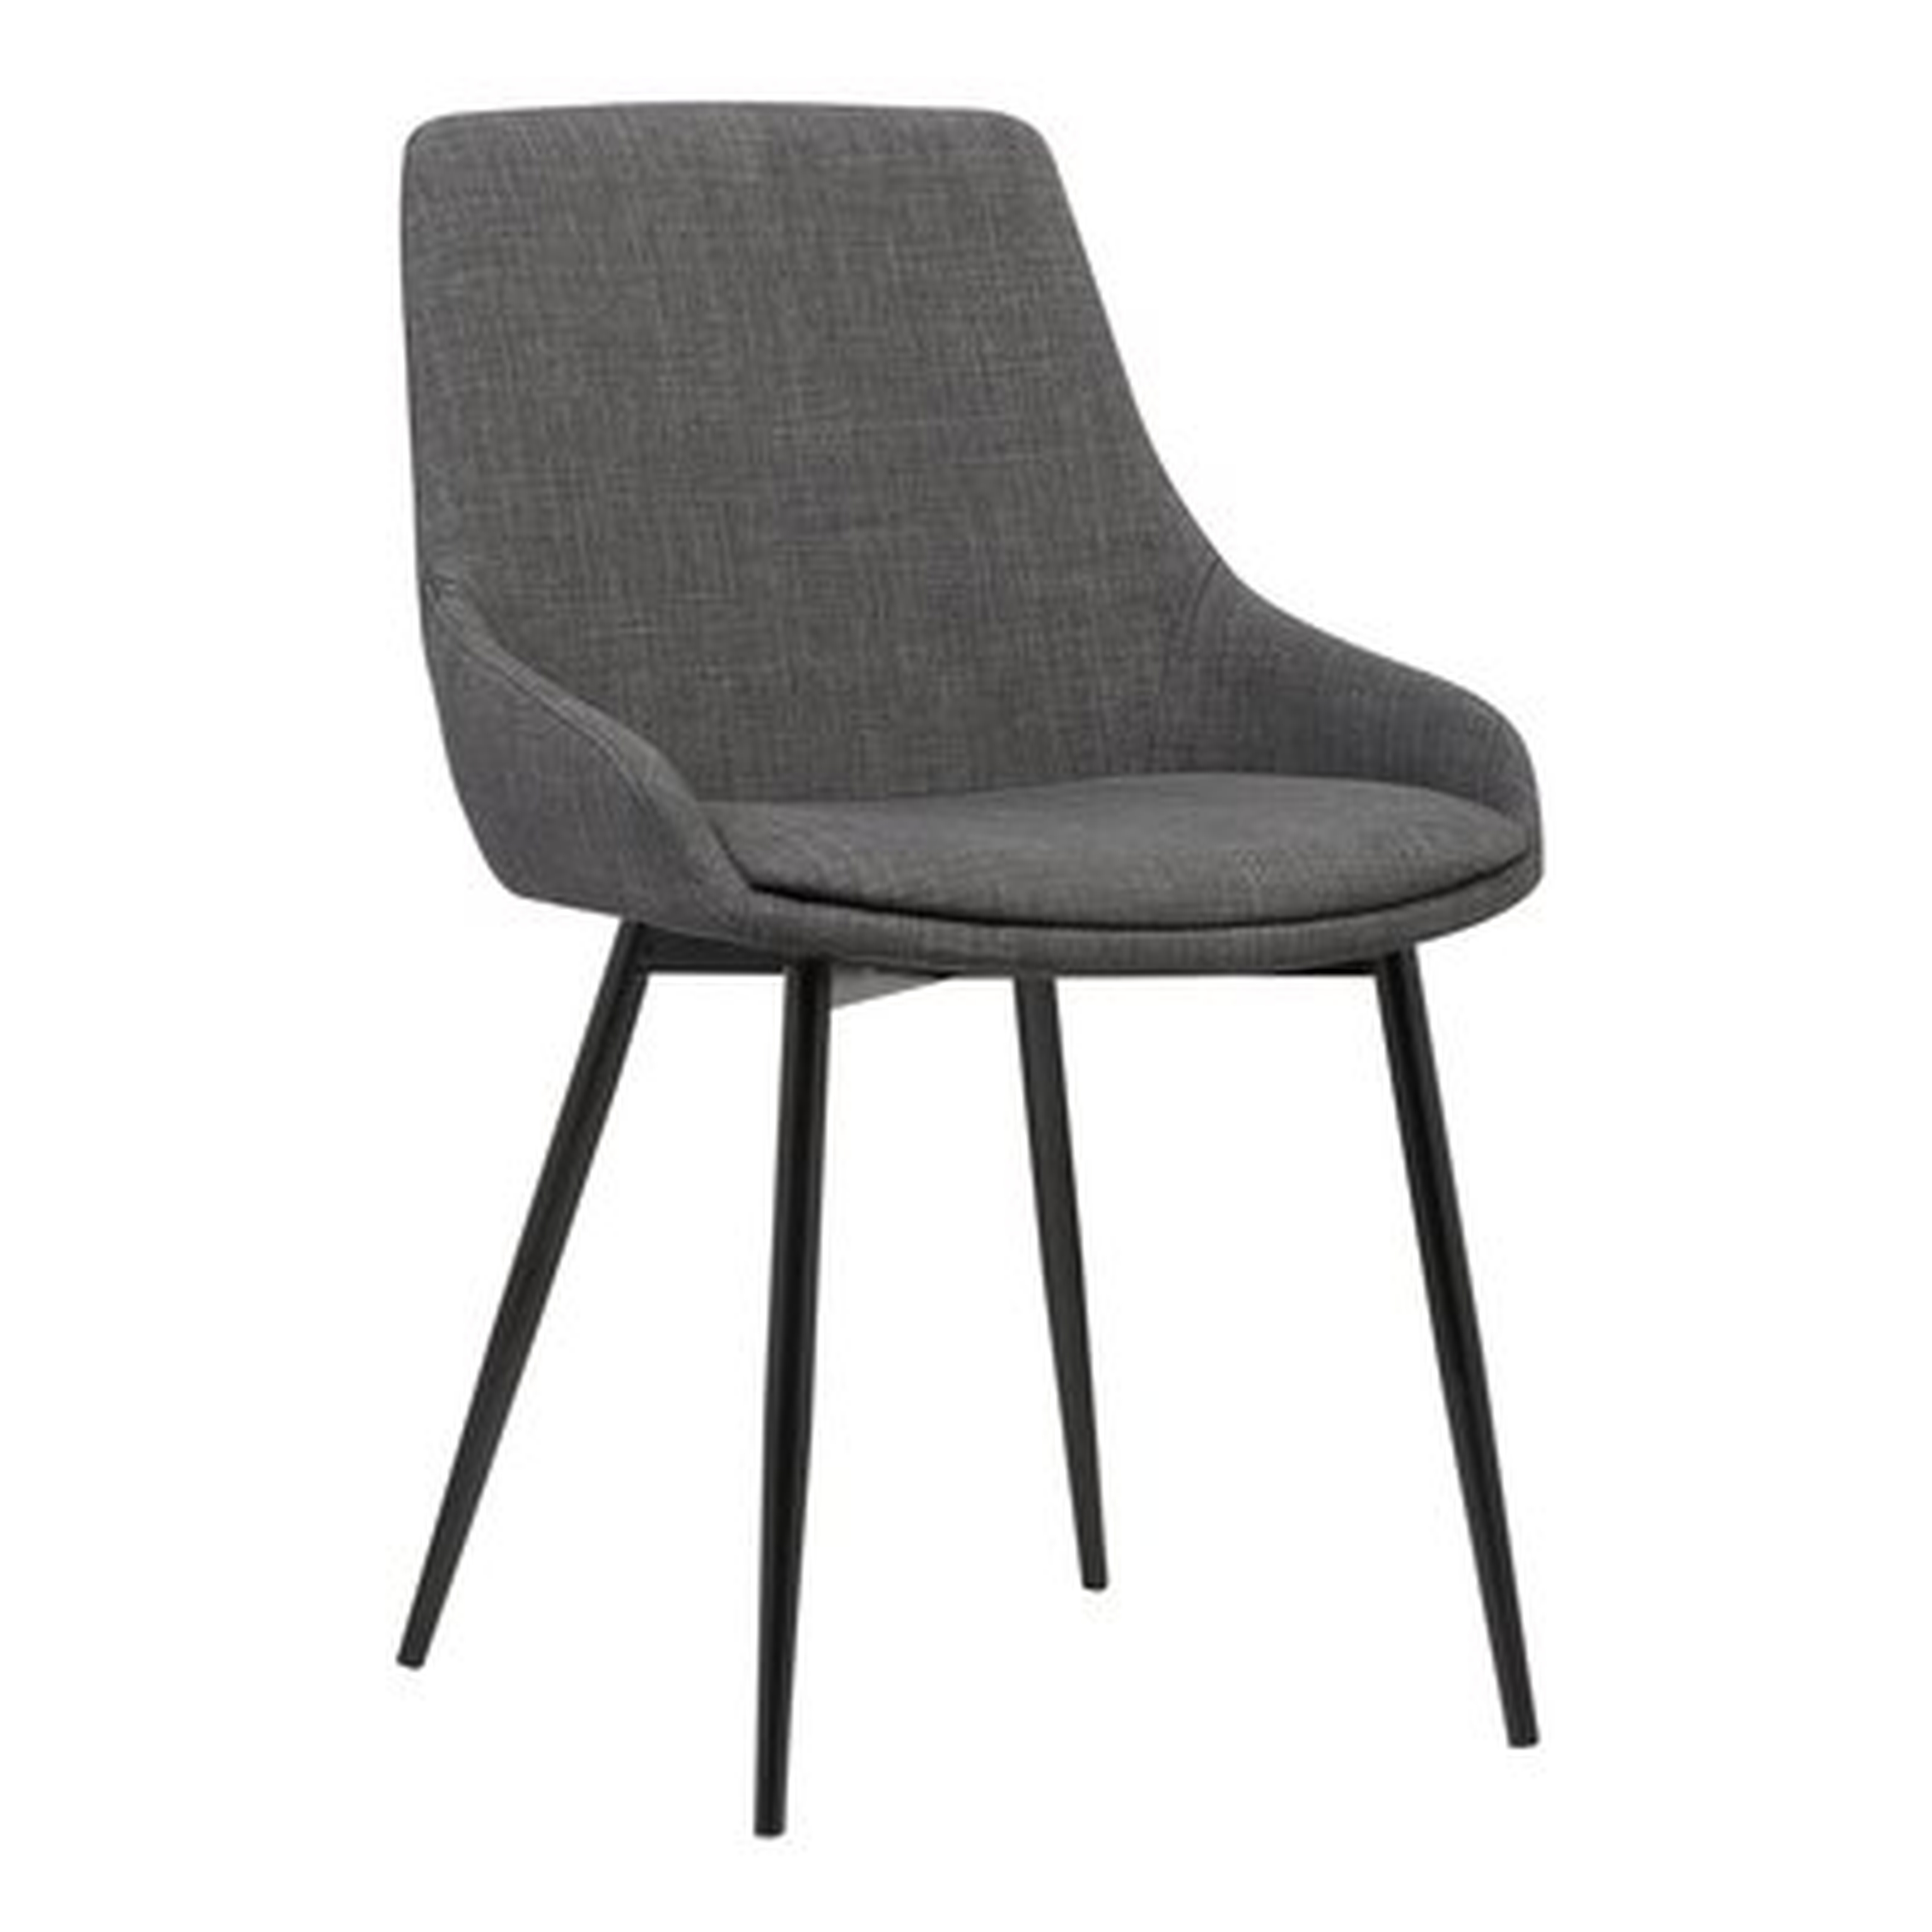 Kierra Contemporary Arm Chair - Wayfair